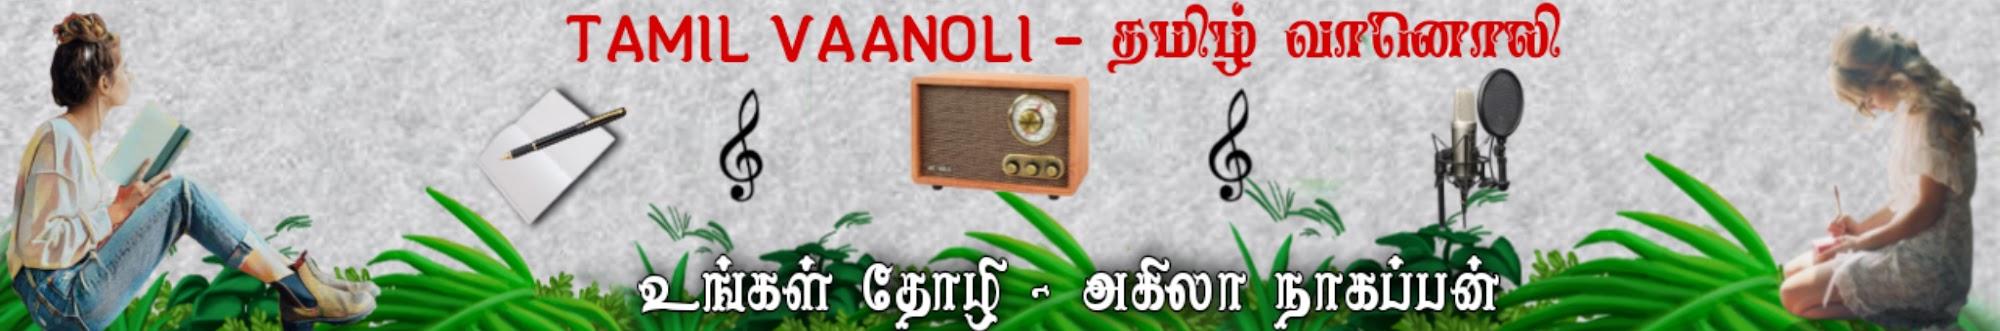 Tamil Vaanoli 